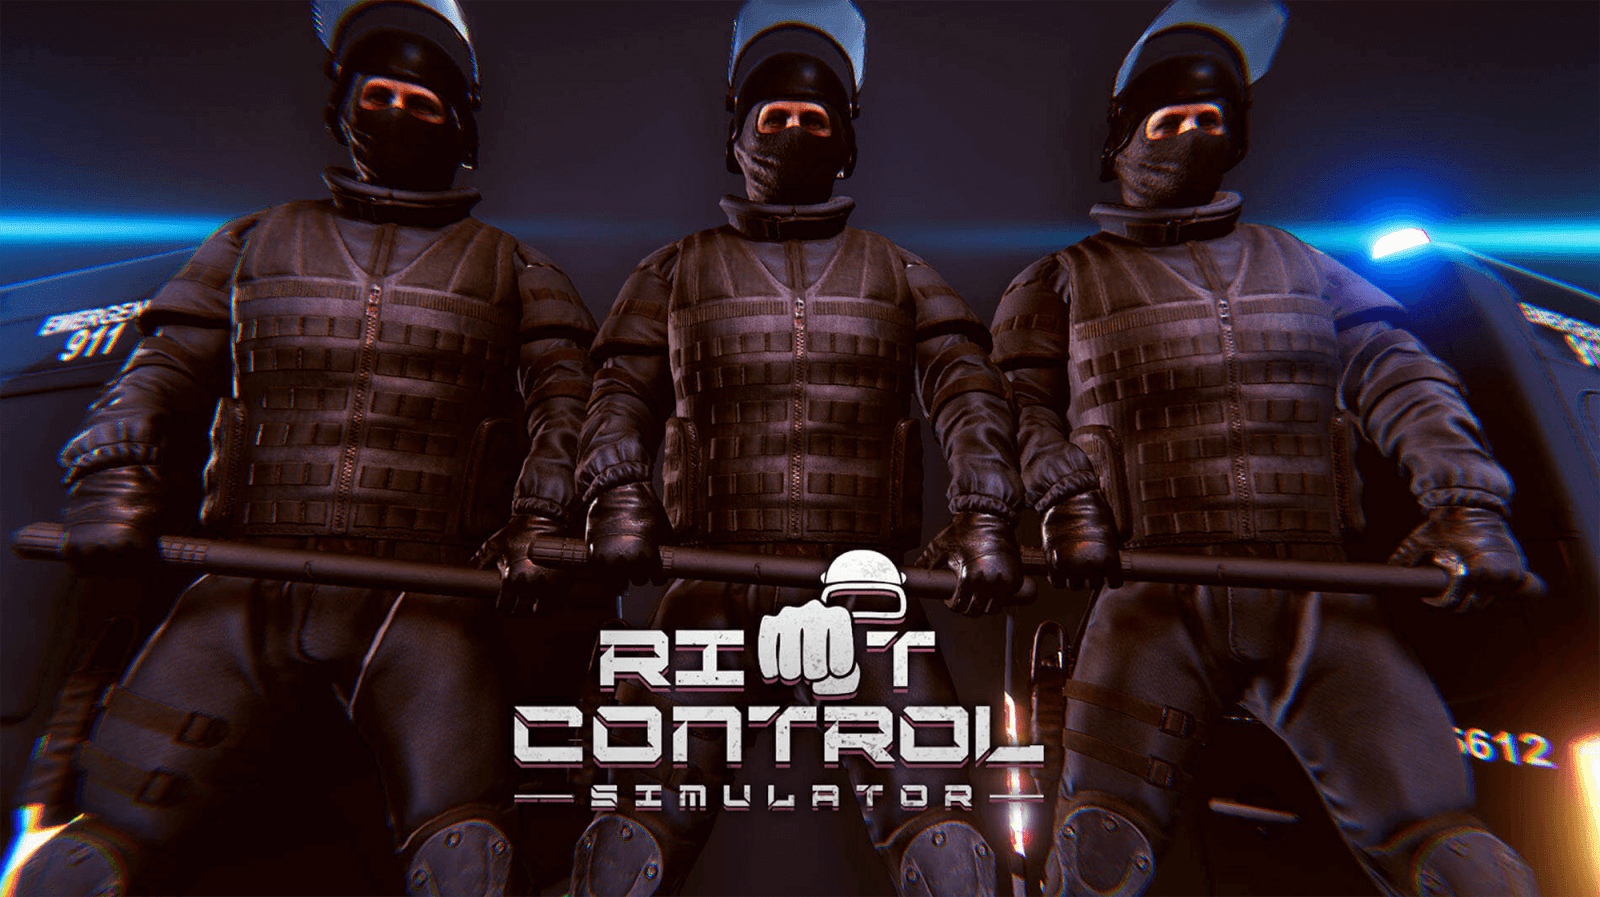 Riot Control Simulator: simulação de controle de protestos chega ao Switch em 2023